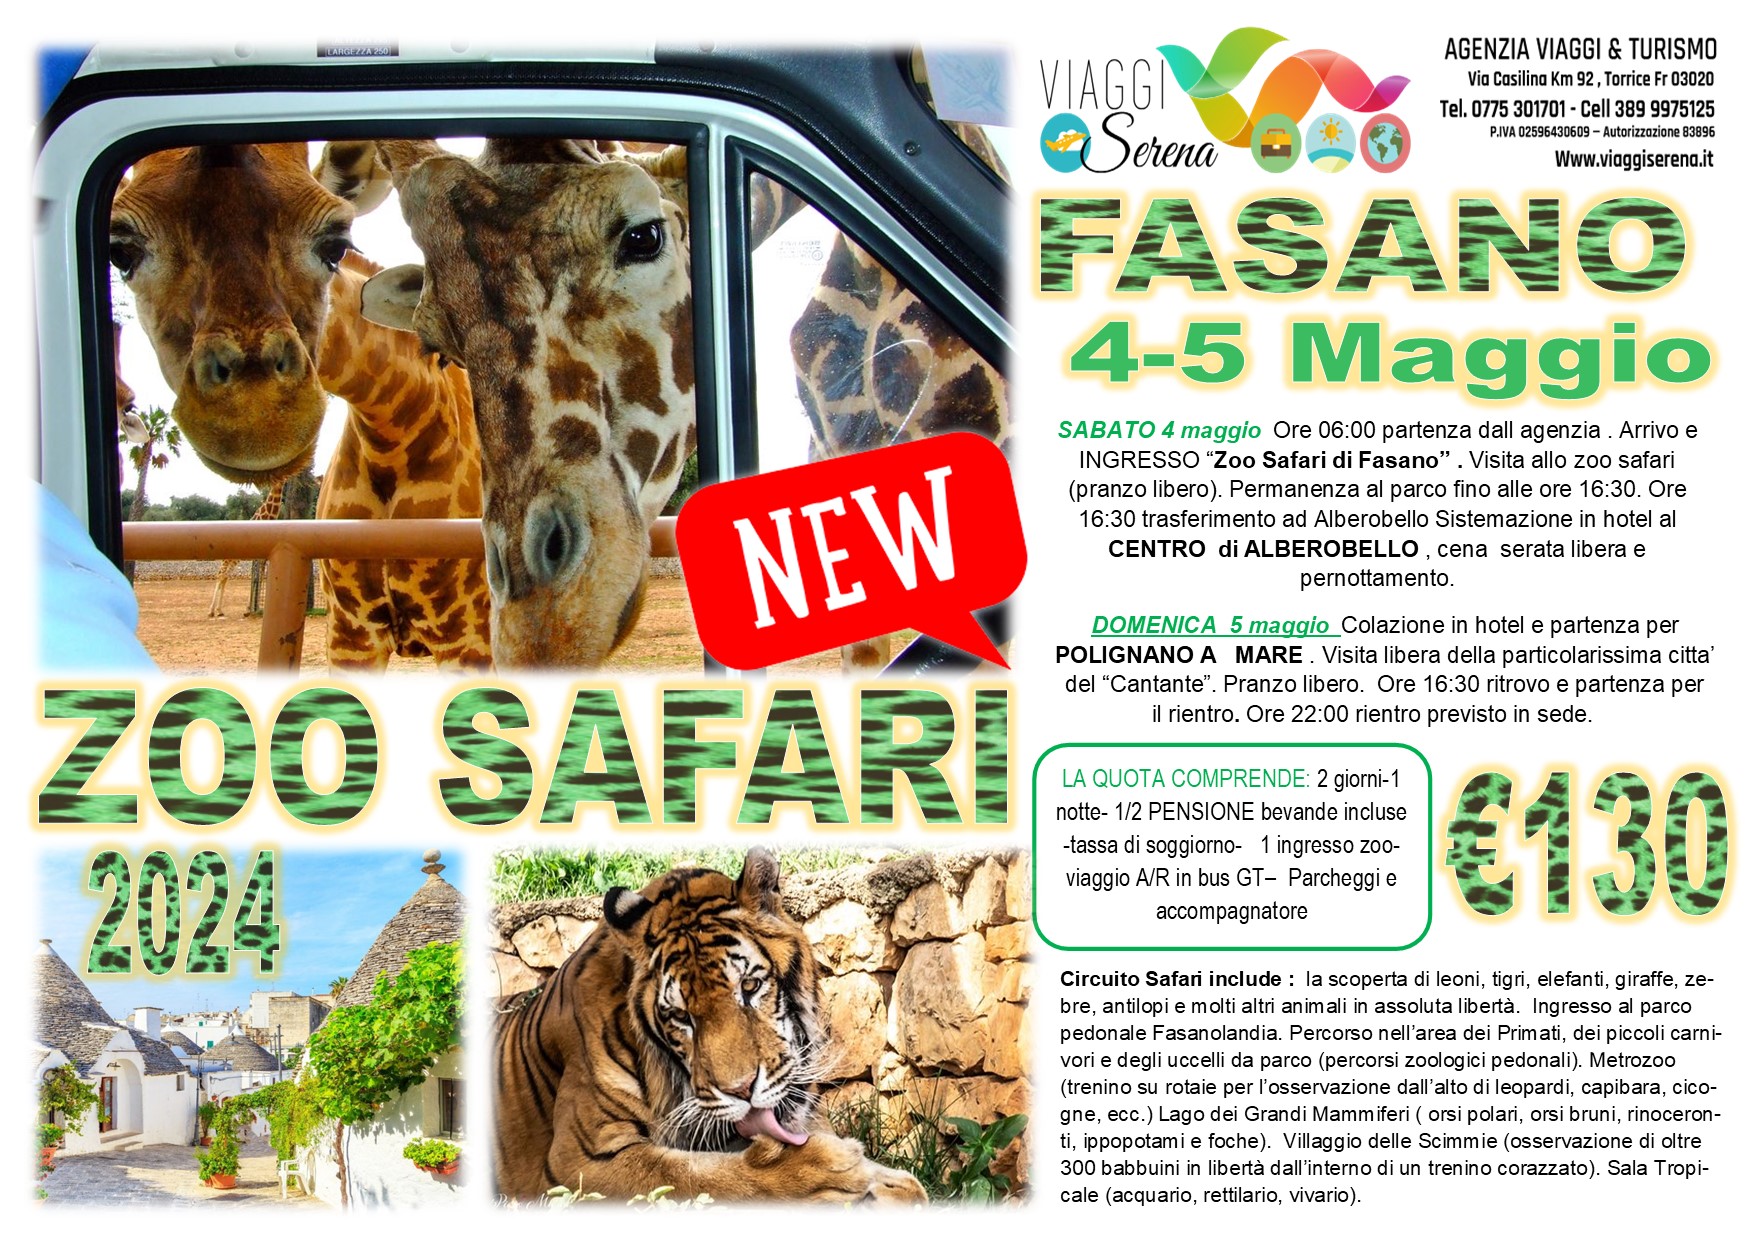 Viaggi di gruppo: Zoo Safari di Fasano, Alberobello e Polignano a mare 4-5 Maggio €130,00